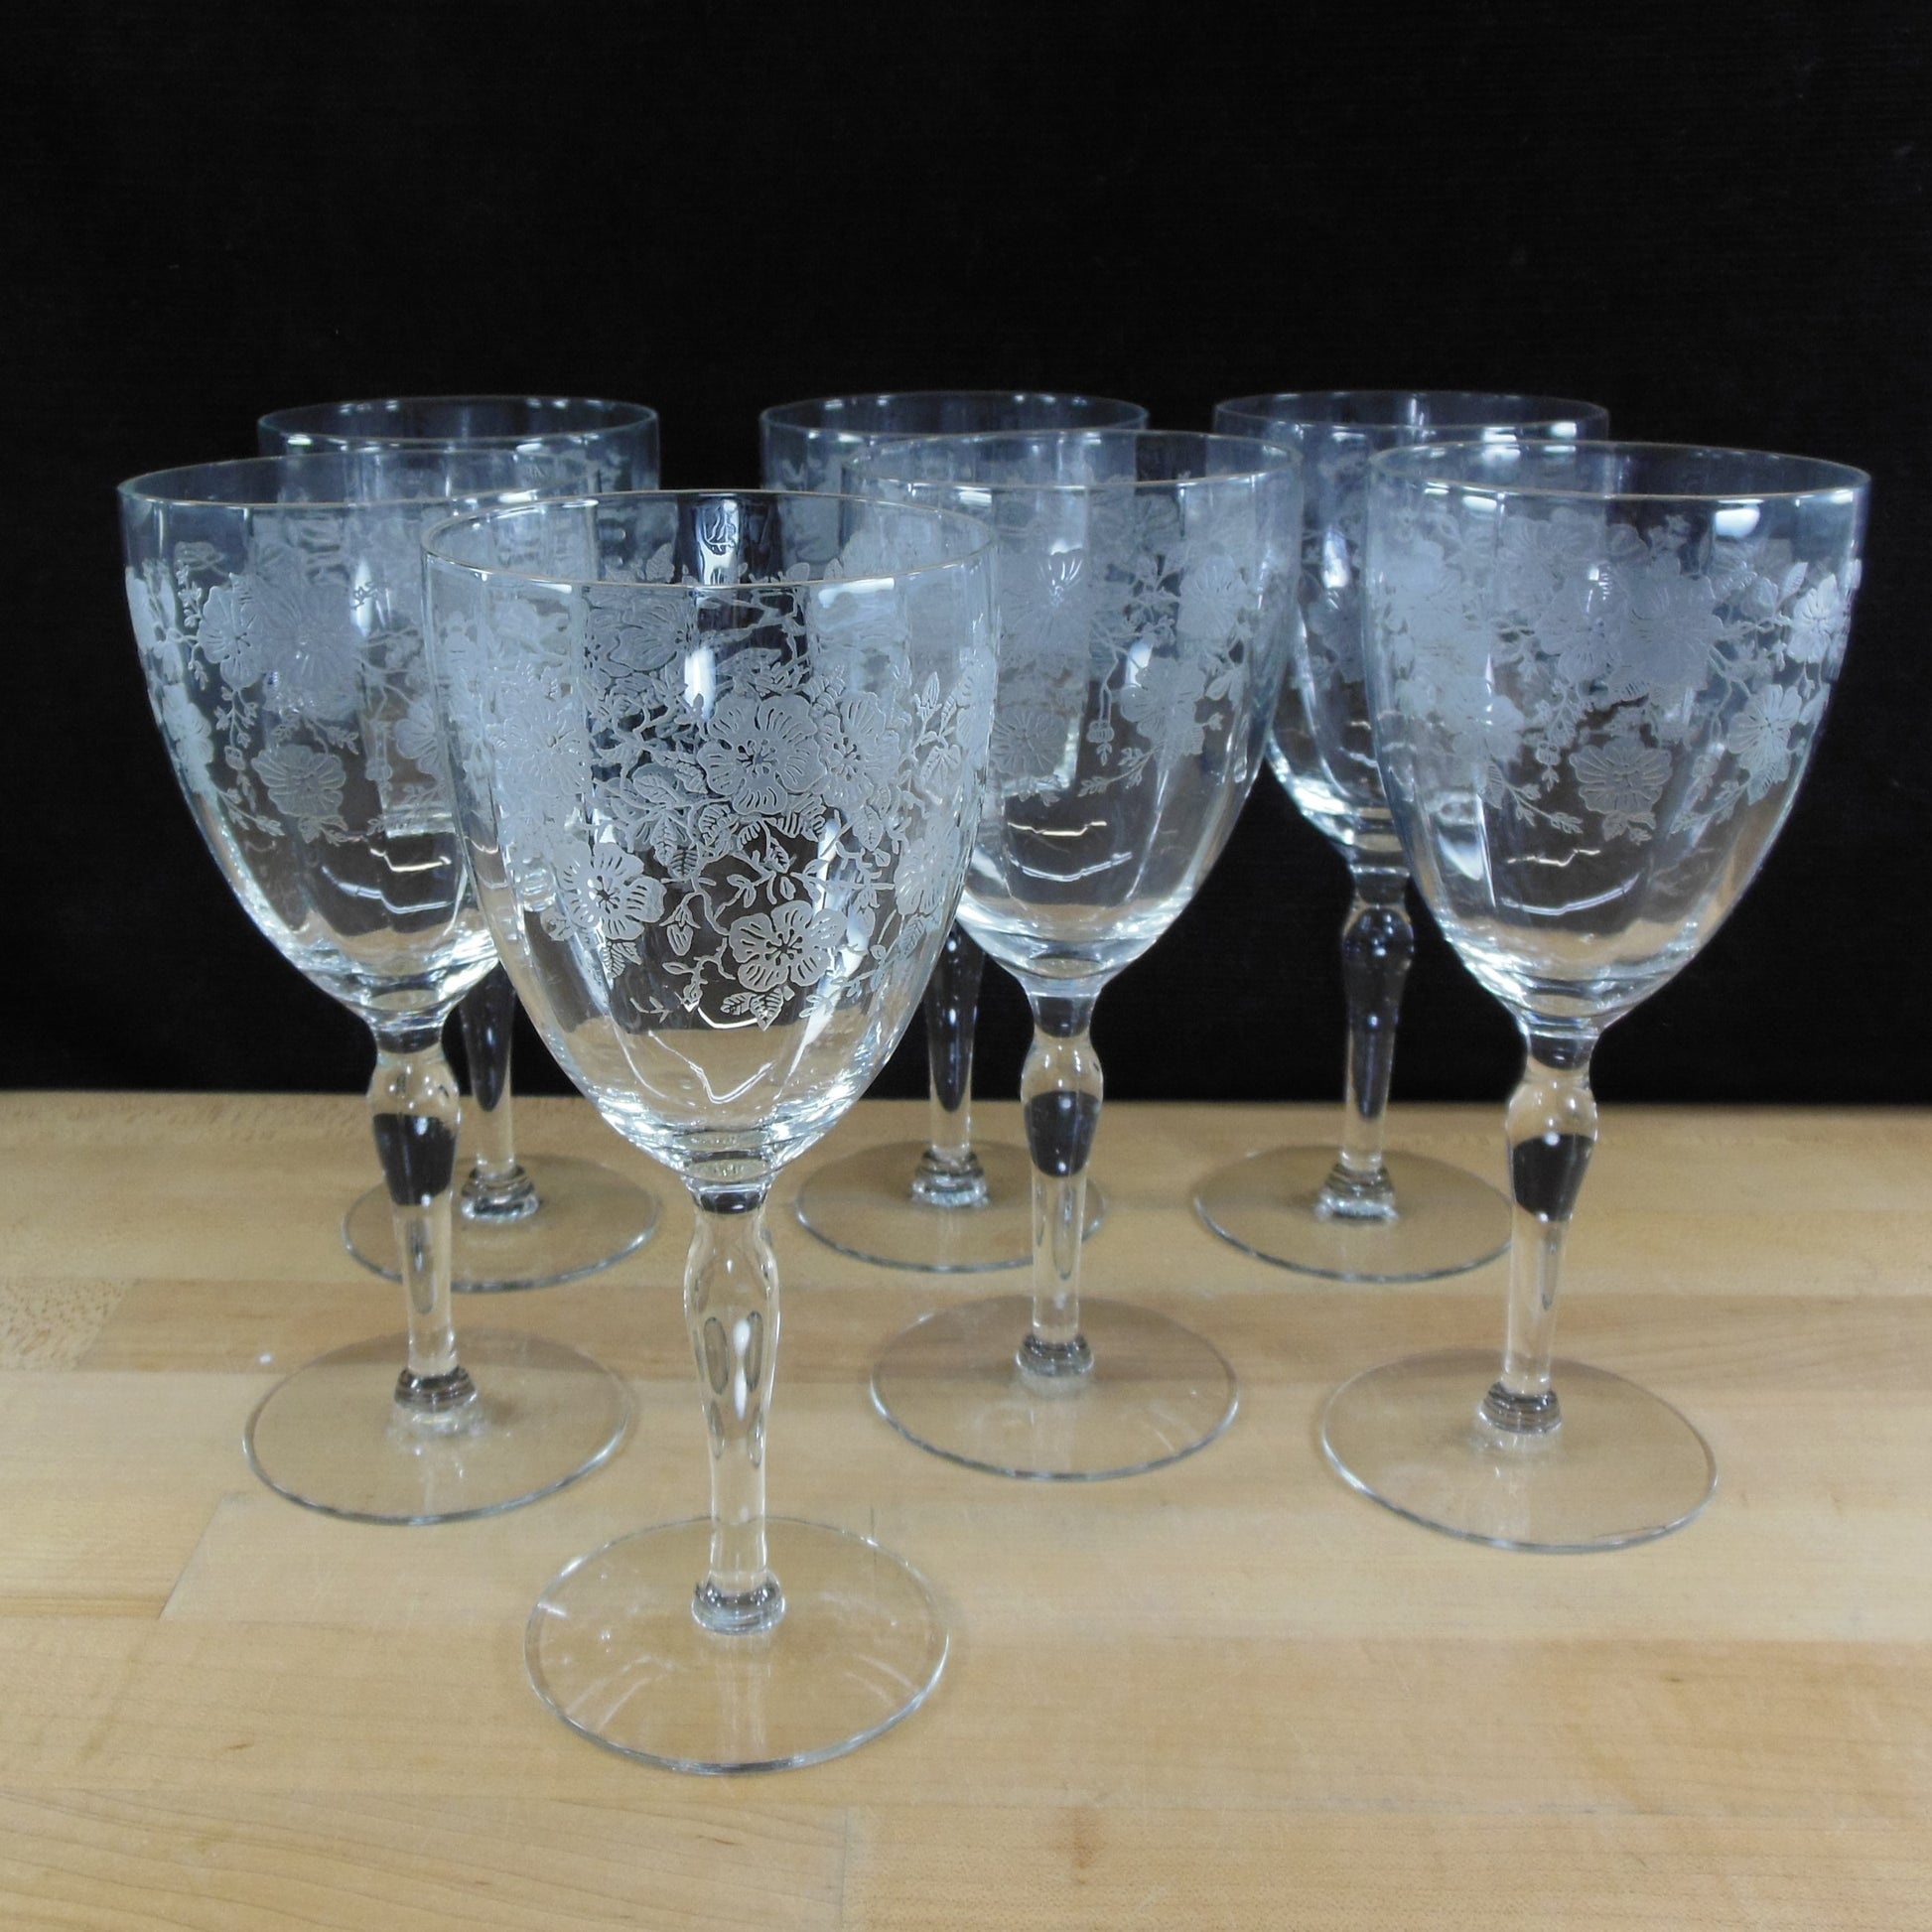 Unknown Maker UNK2629 Elegant Floral Etched Crystal Water Glass Goblet - 7 Set